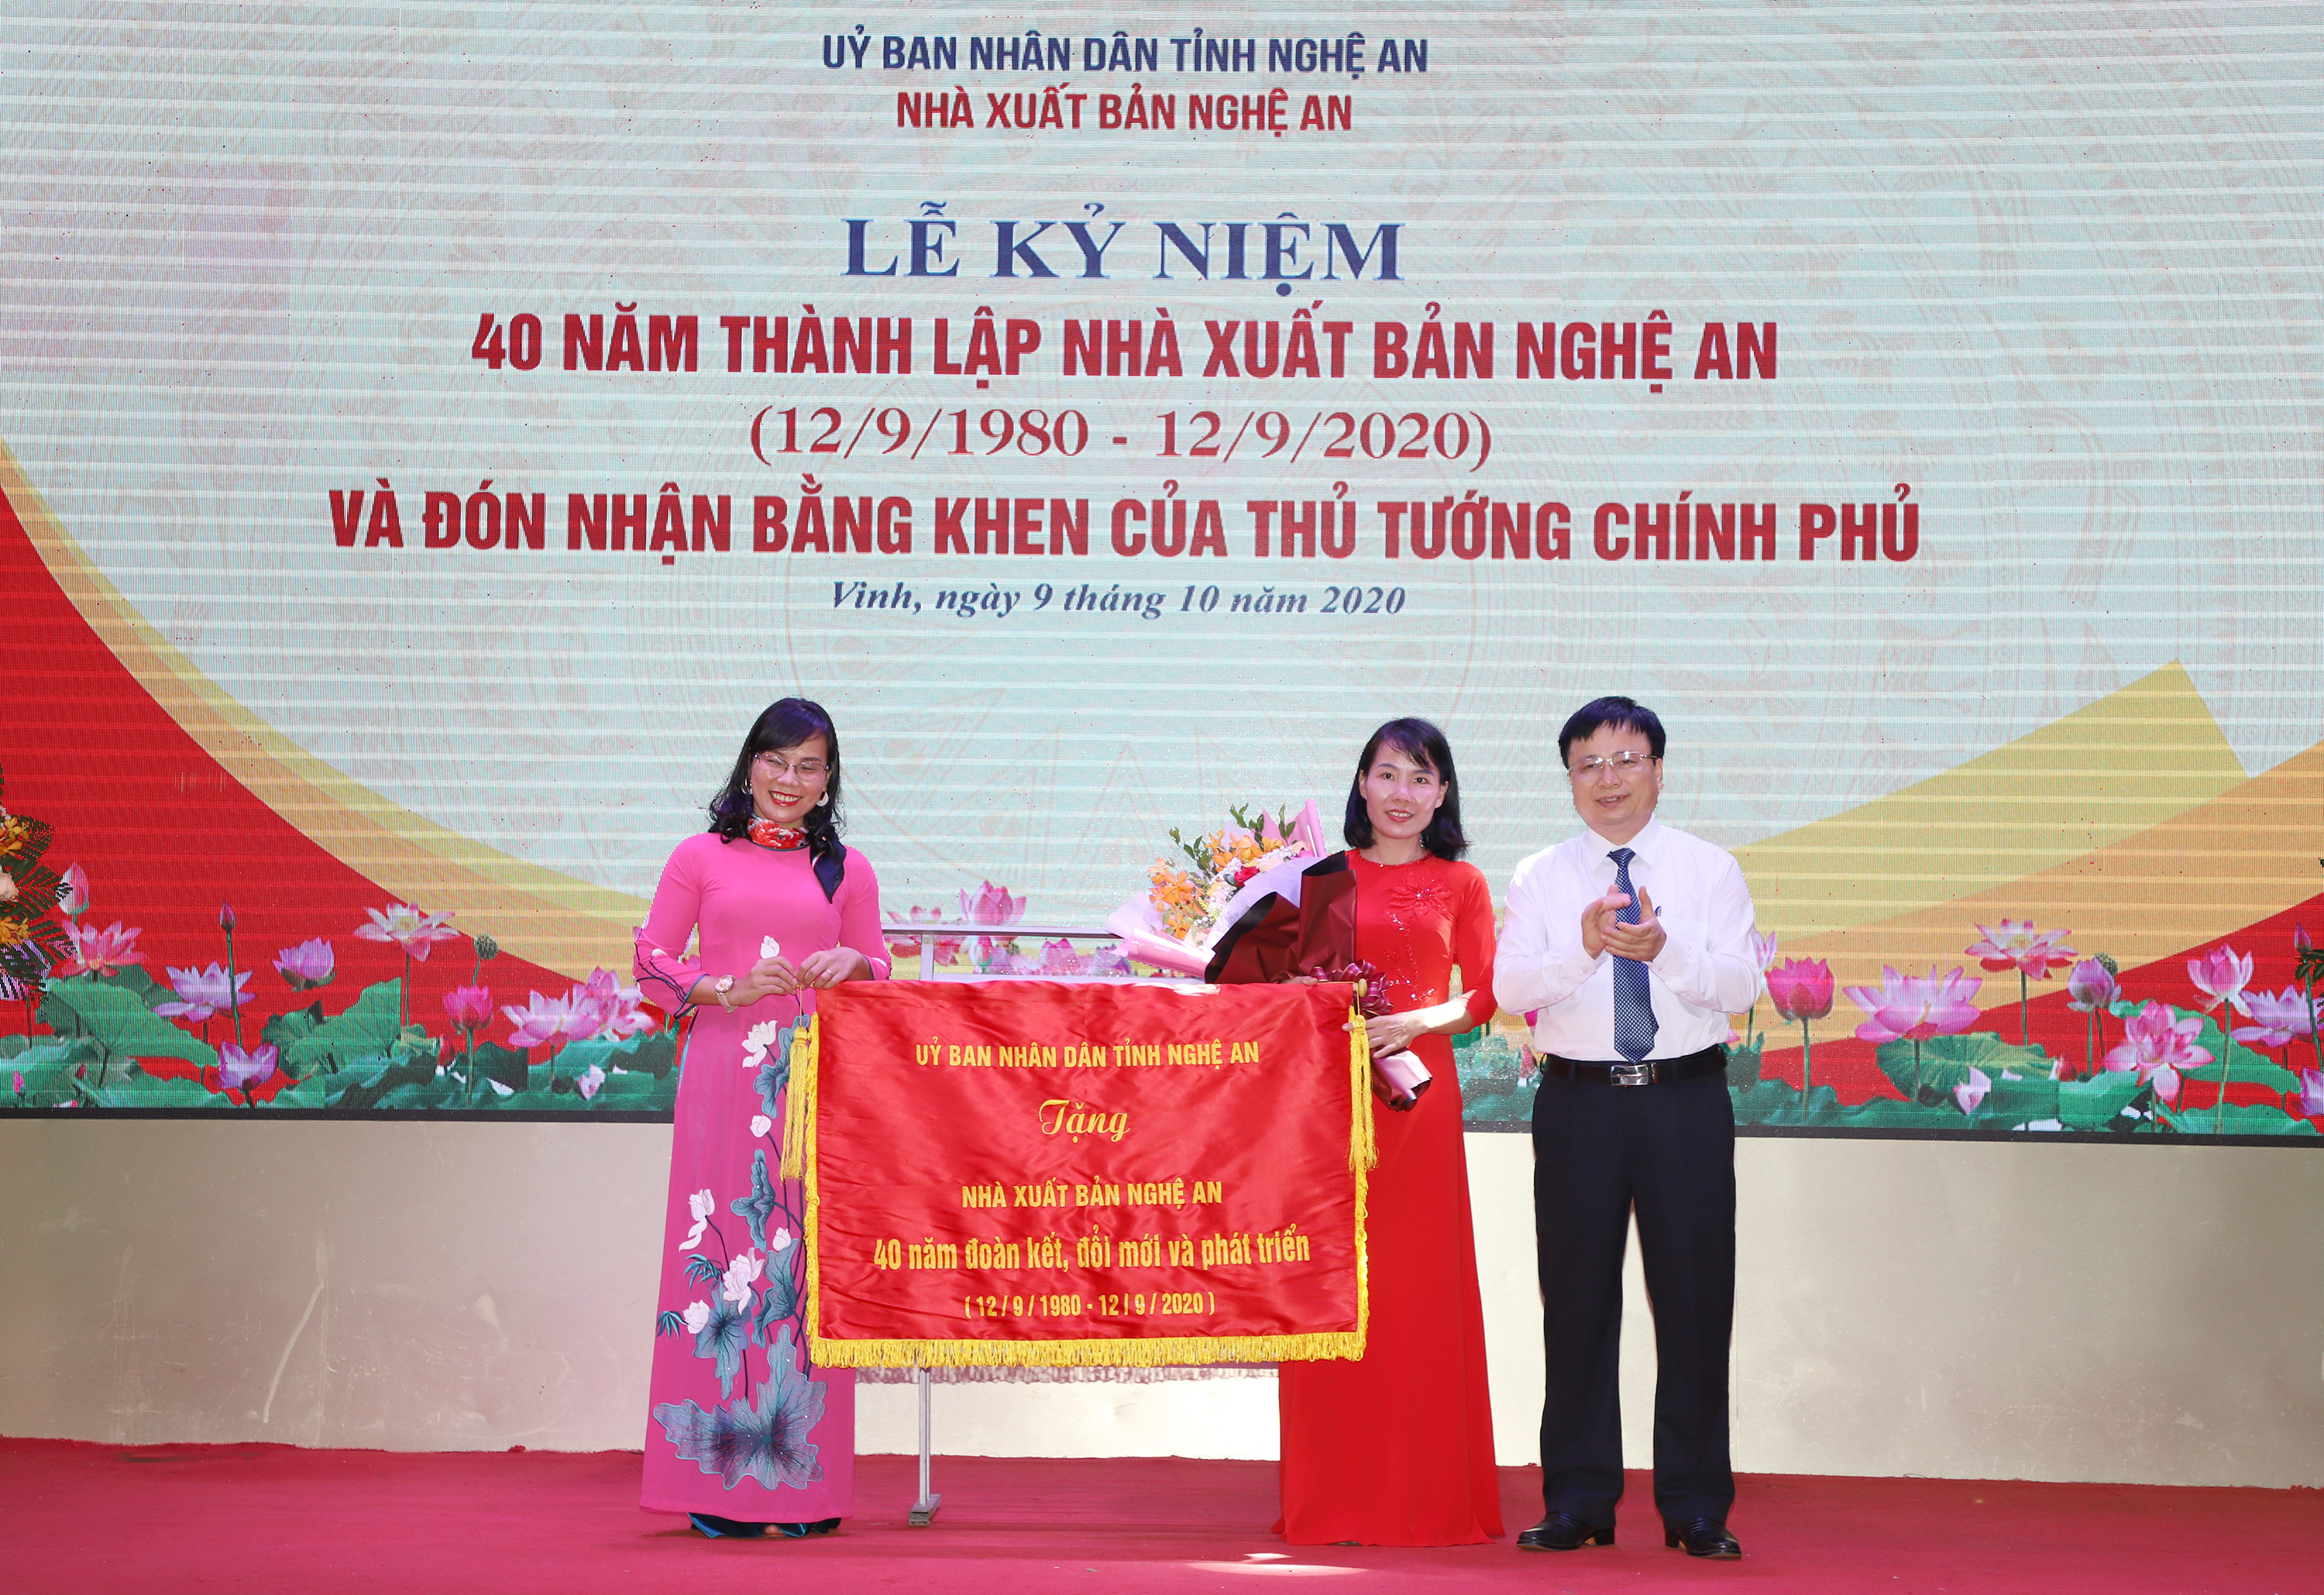 Đồng chí Bùi Đình Long - Phó Chủ tịch UBND tỉnh trao bức trướng của UBND tỉnh cho Nhà xuất bản Nghệ An. Ảnh: Phạm Bằng